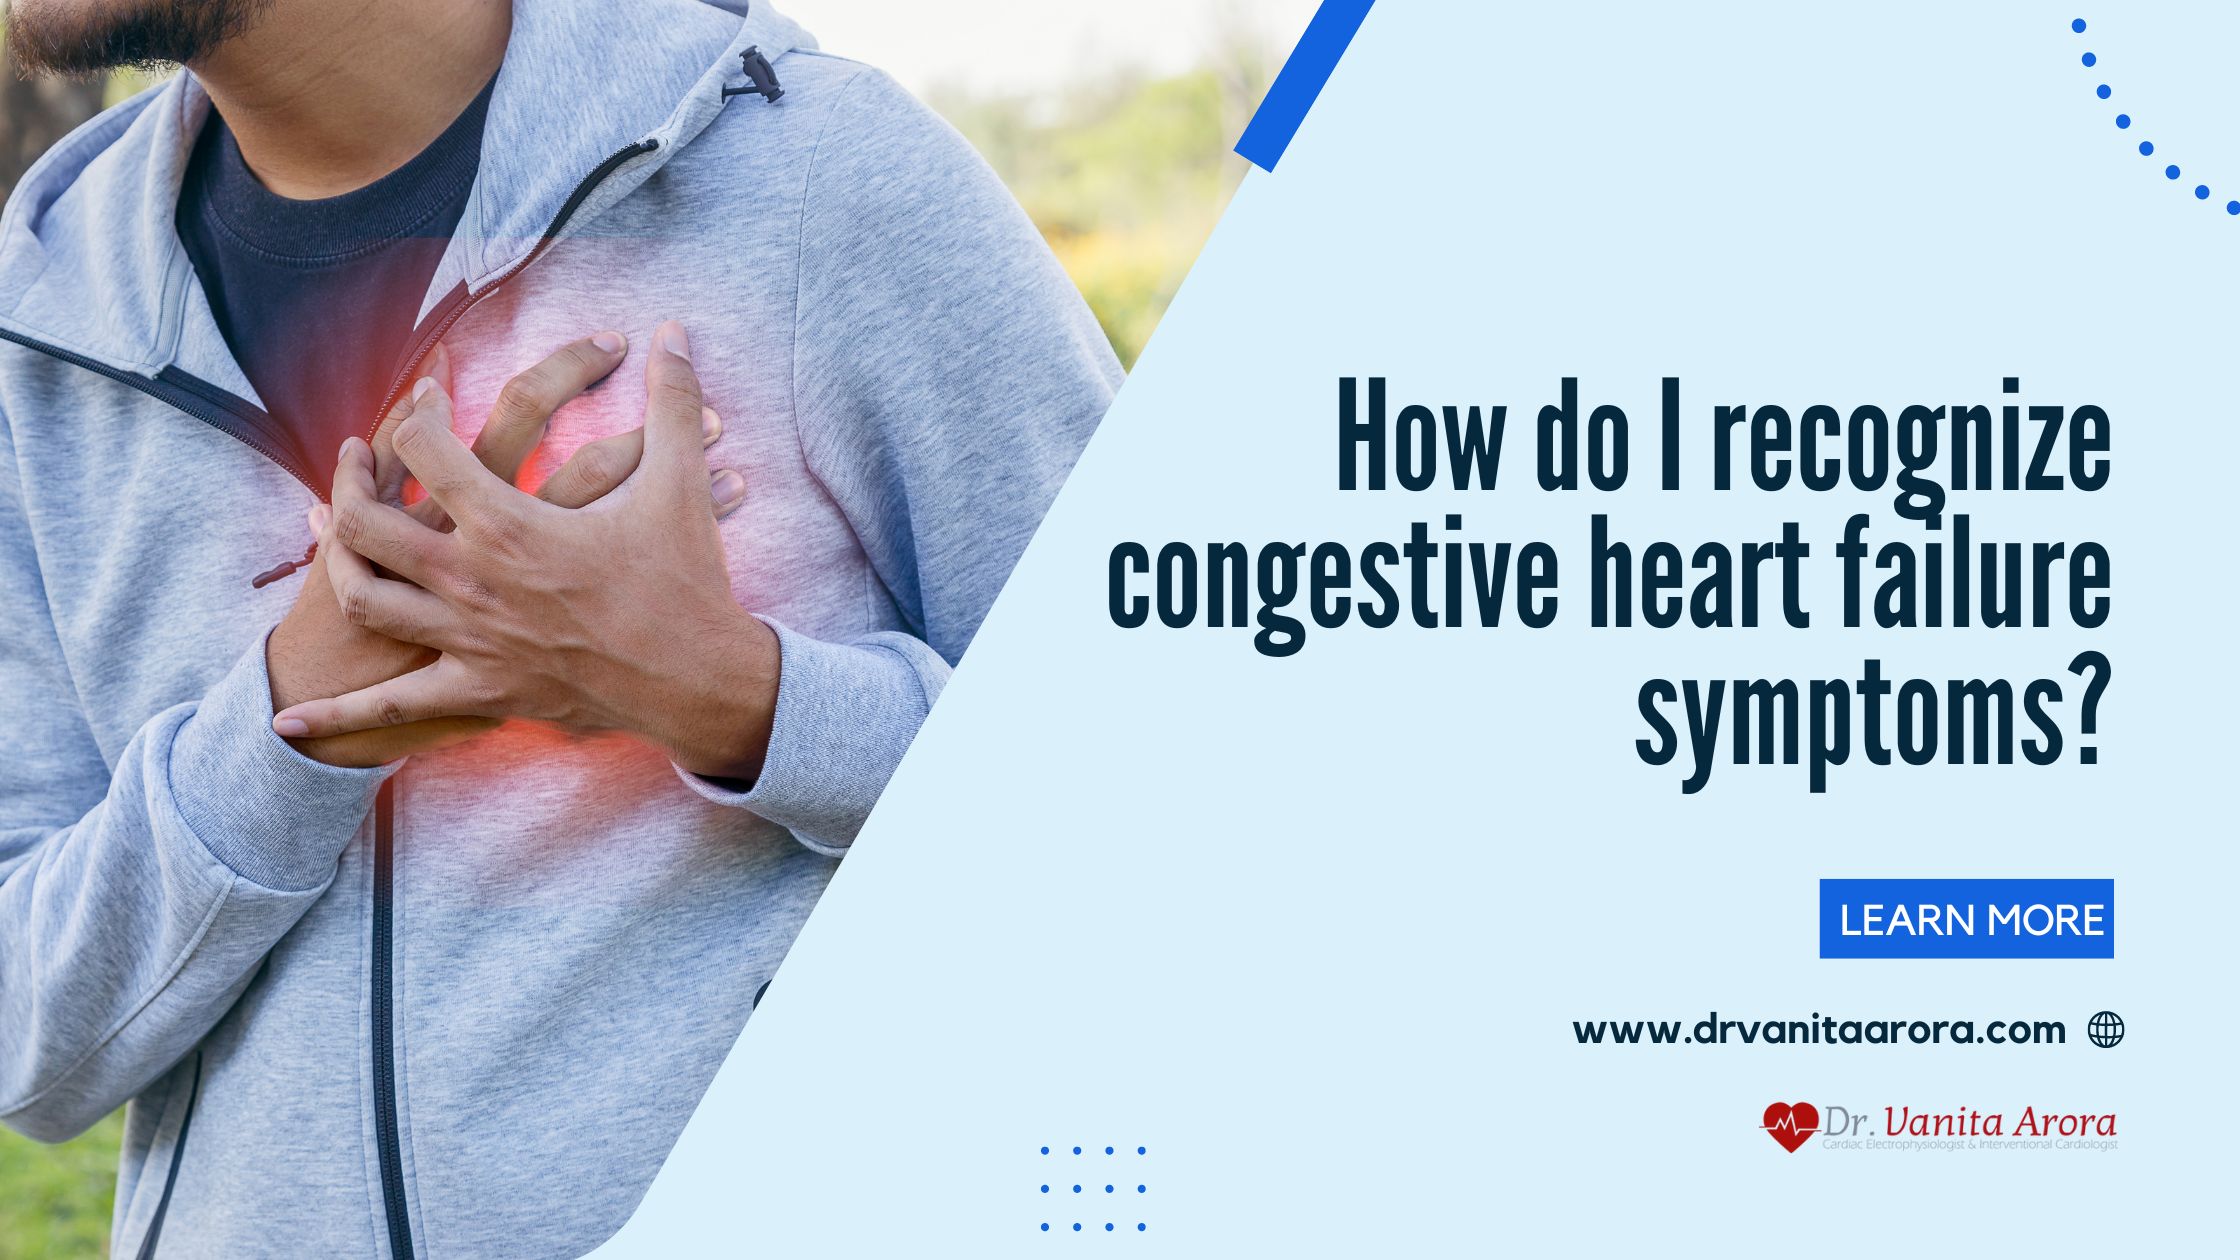 How do I recognize congestive heart failure symptoms?